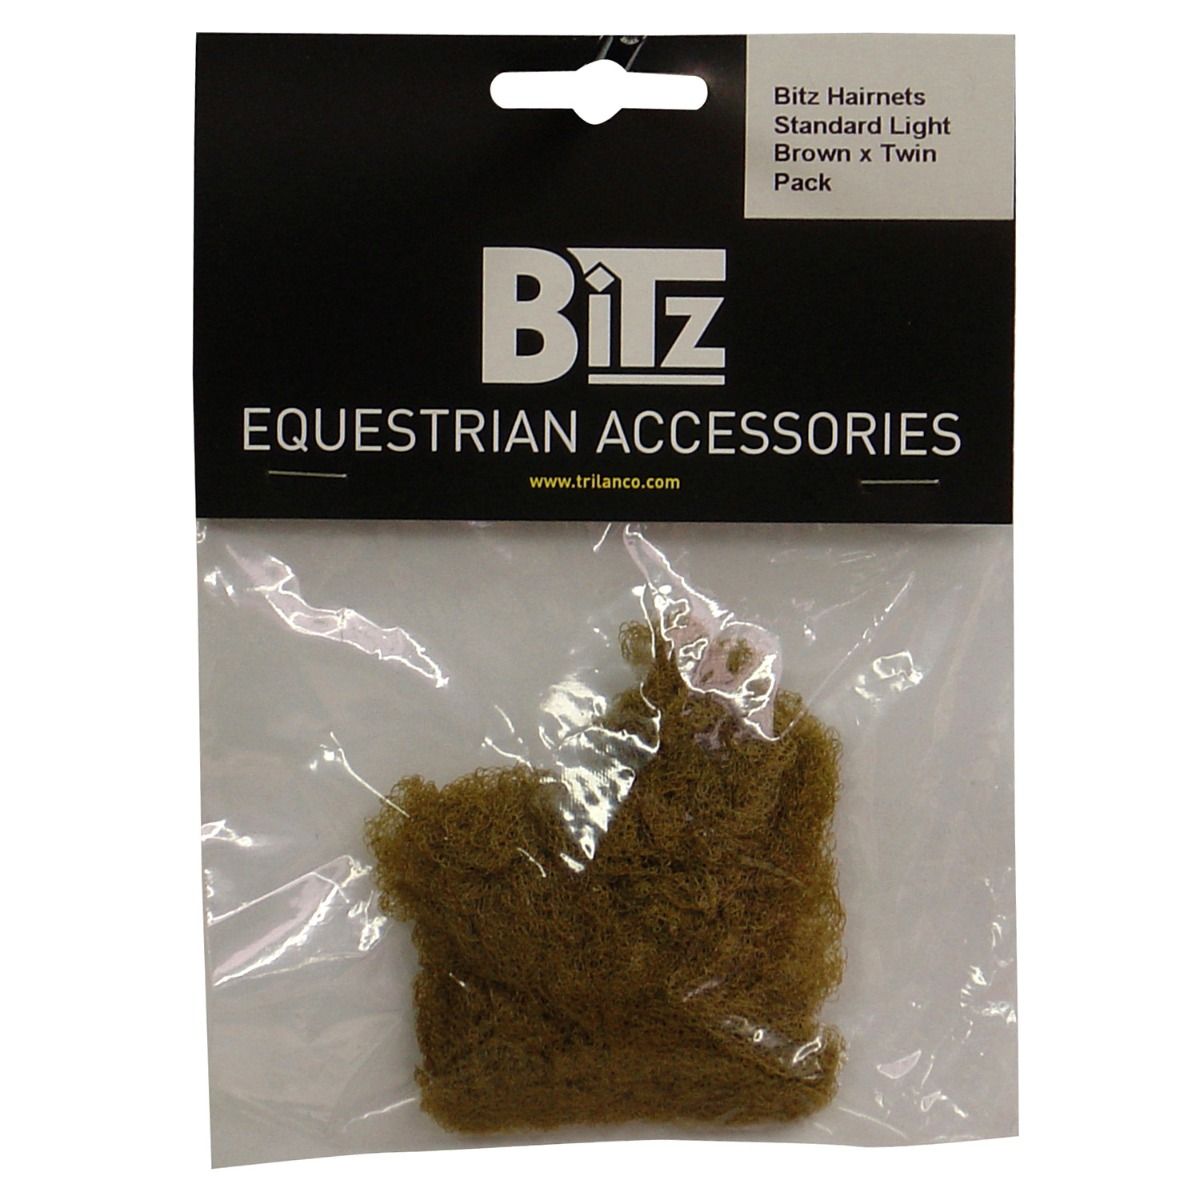 Bitz Standard Twin Pack Hairnets